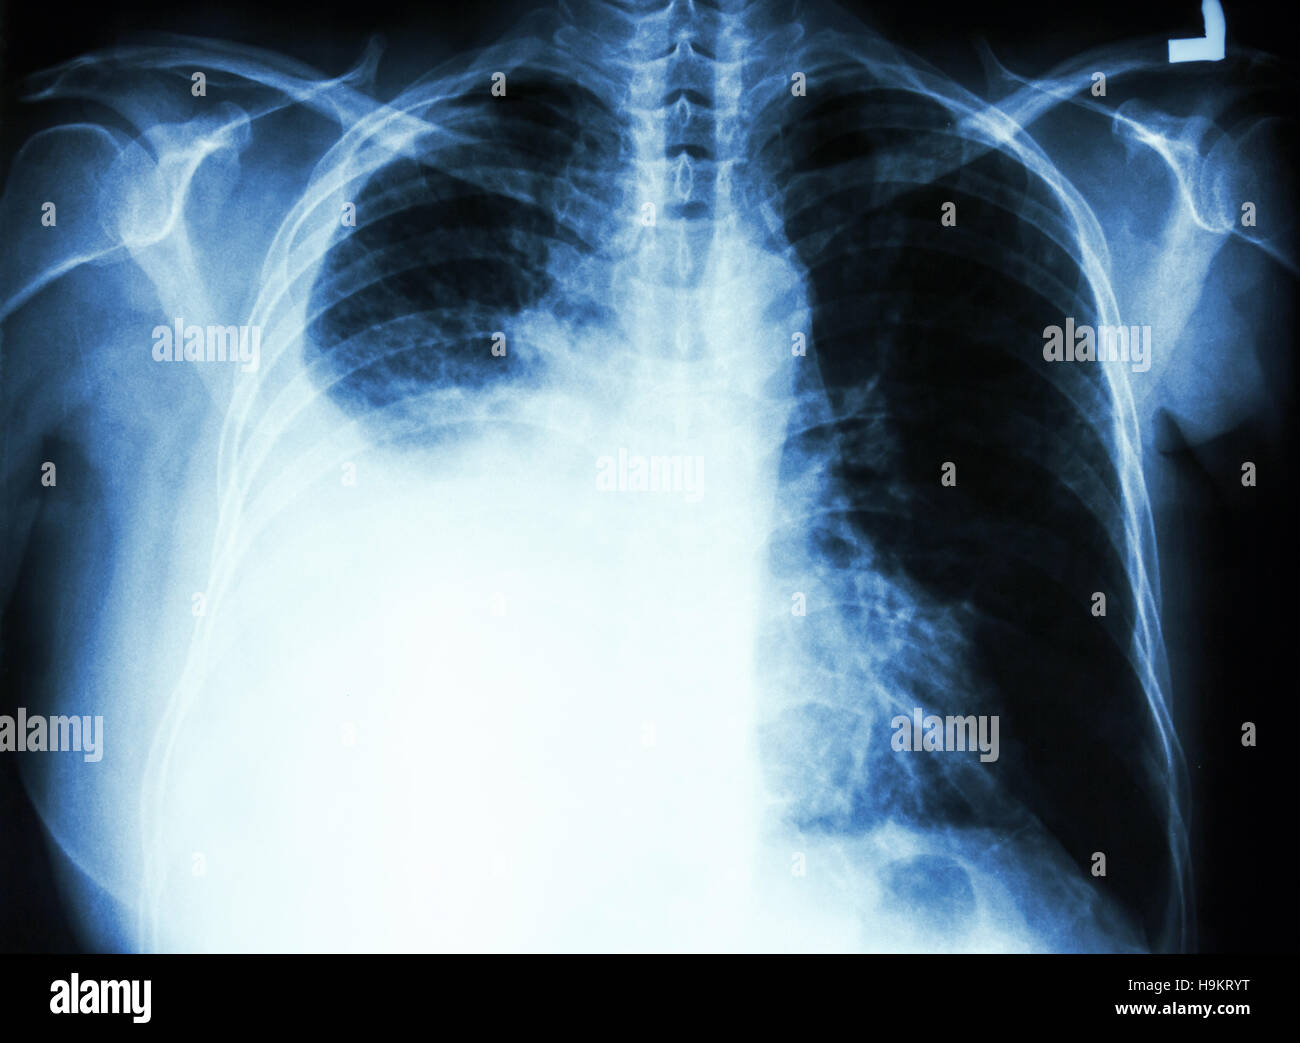 Film Brust Röntgen PA aufrecht: show Pleuraerguss im rechten Lungenflügel wegen Lungenkrebs Stockfoto